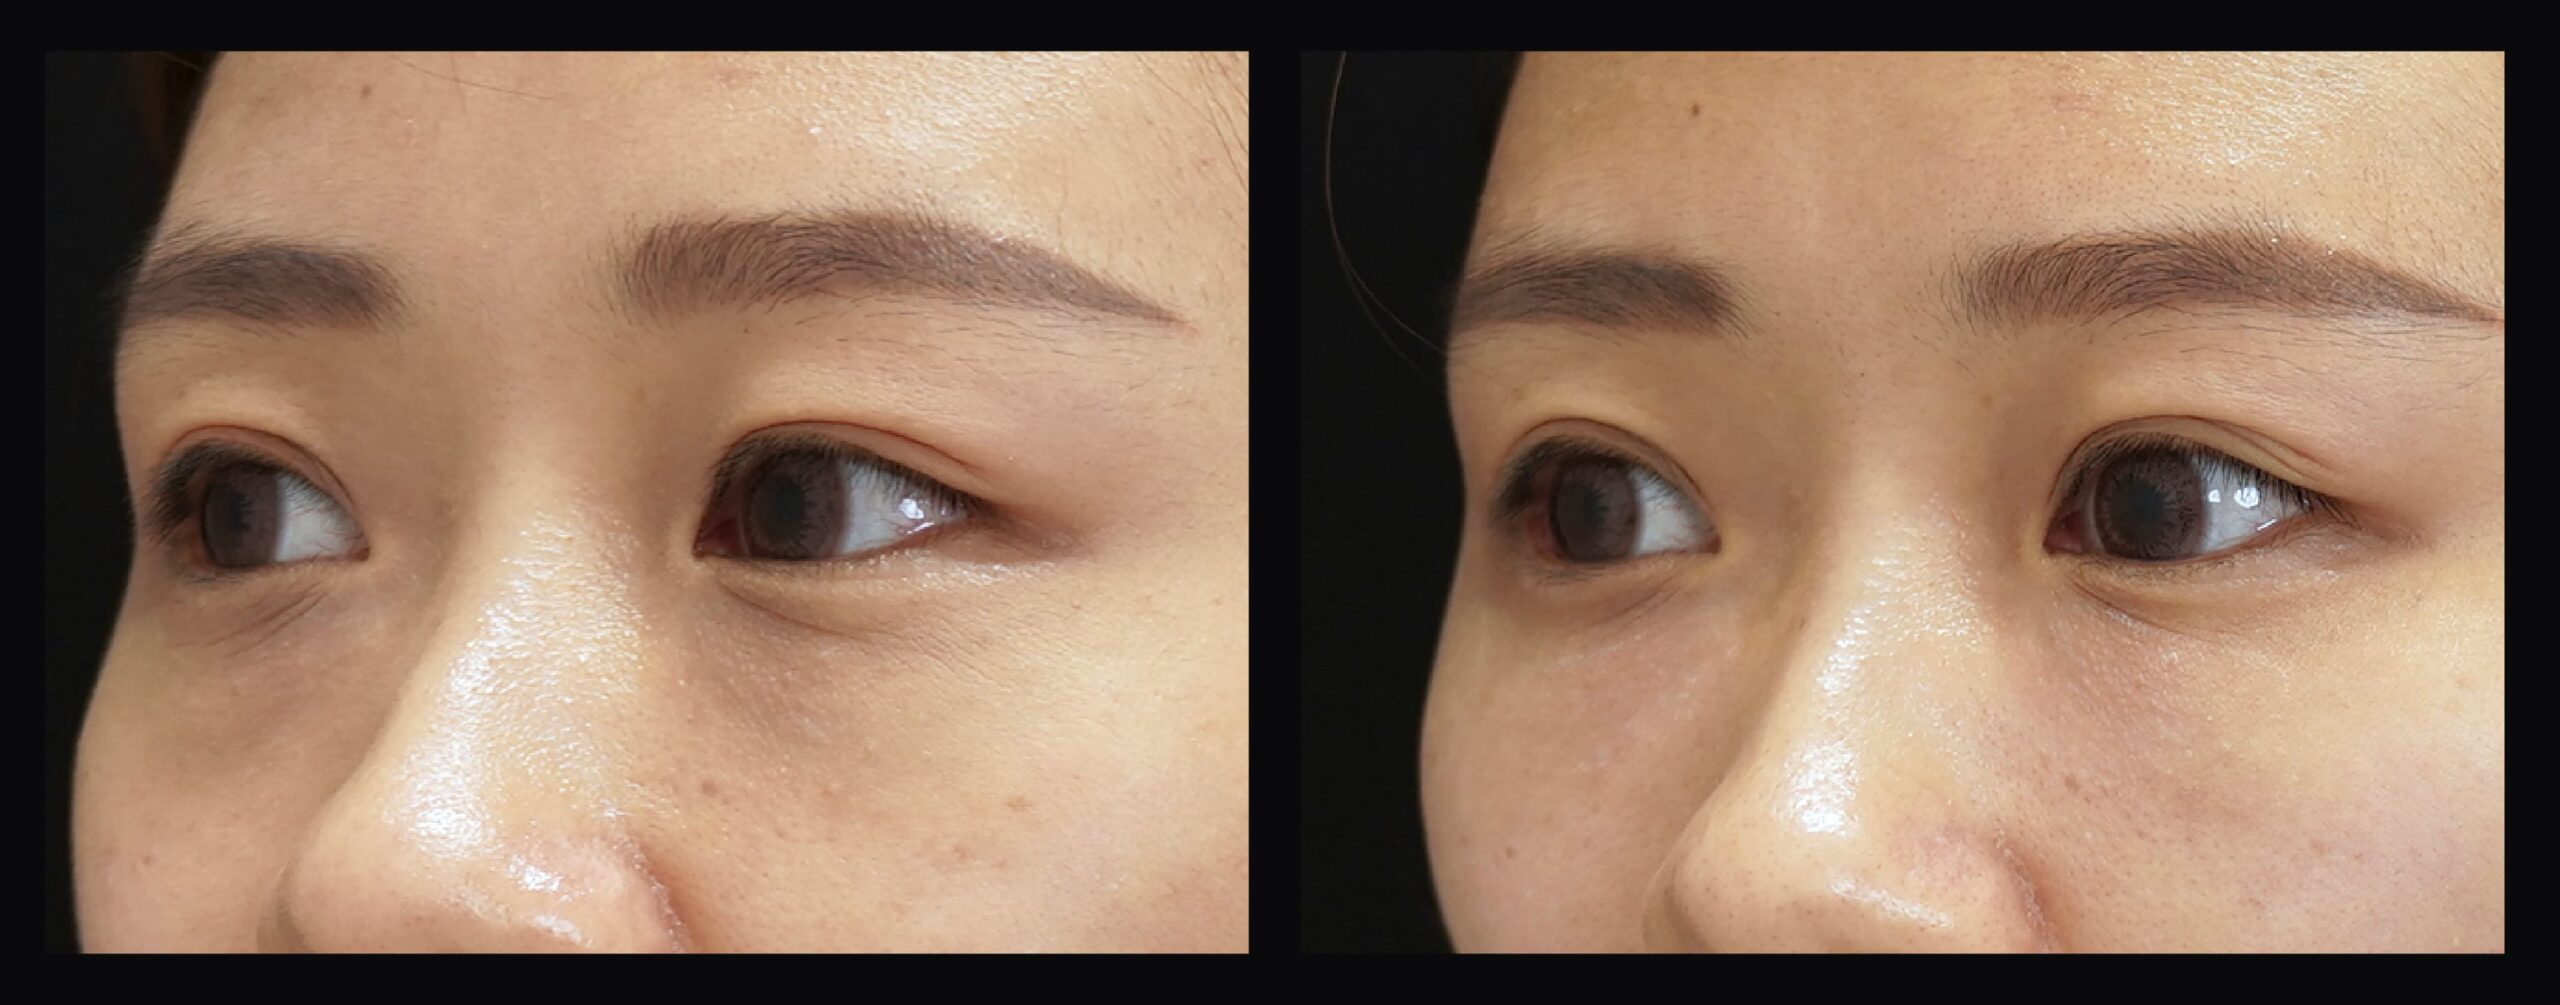 女性利用膠原蛋白在眼瞼淚溝導致眼周皮膚更緊的改變。